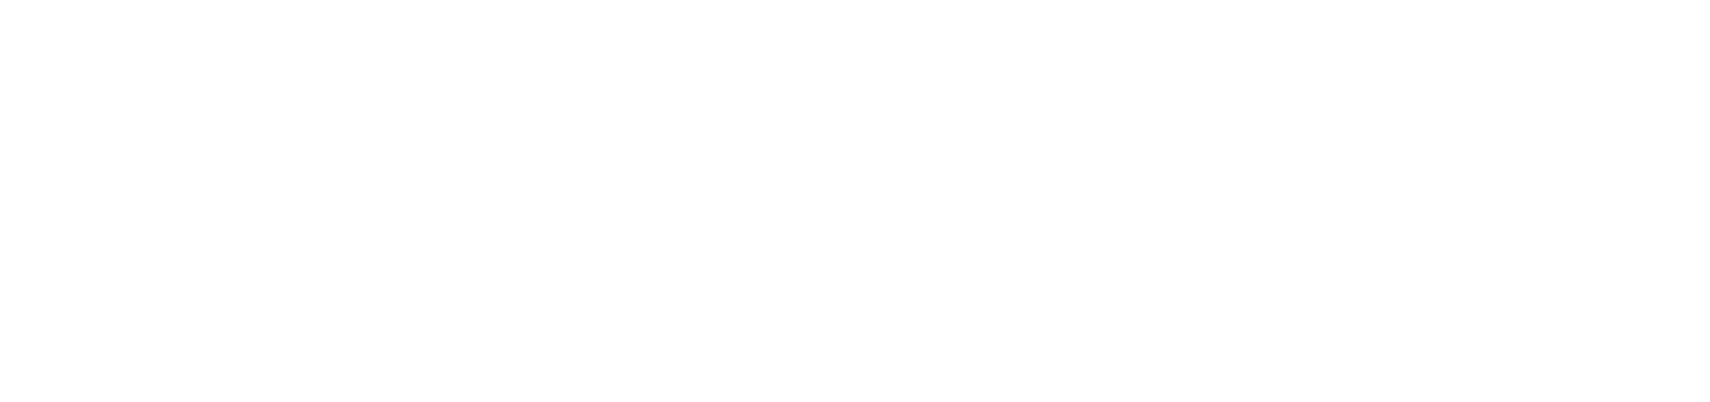 Smart Gym logo with registered strap line 